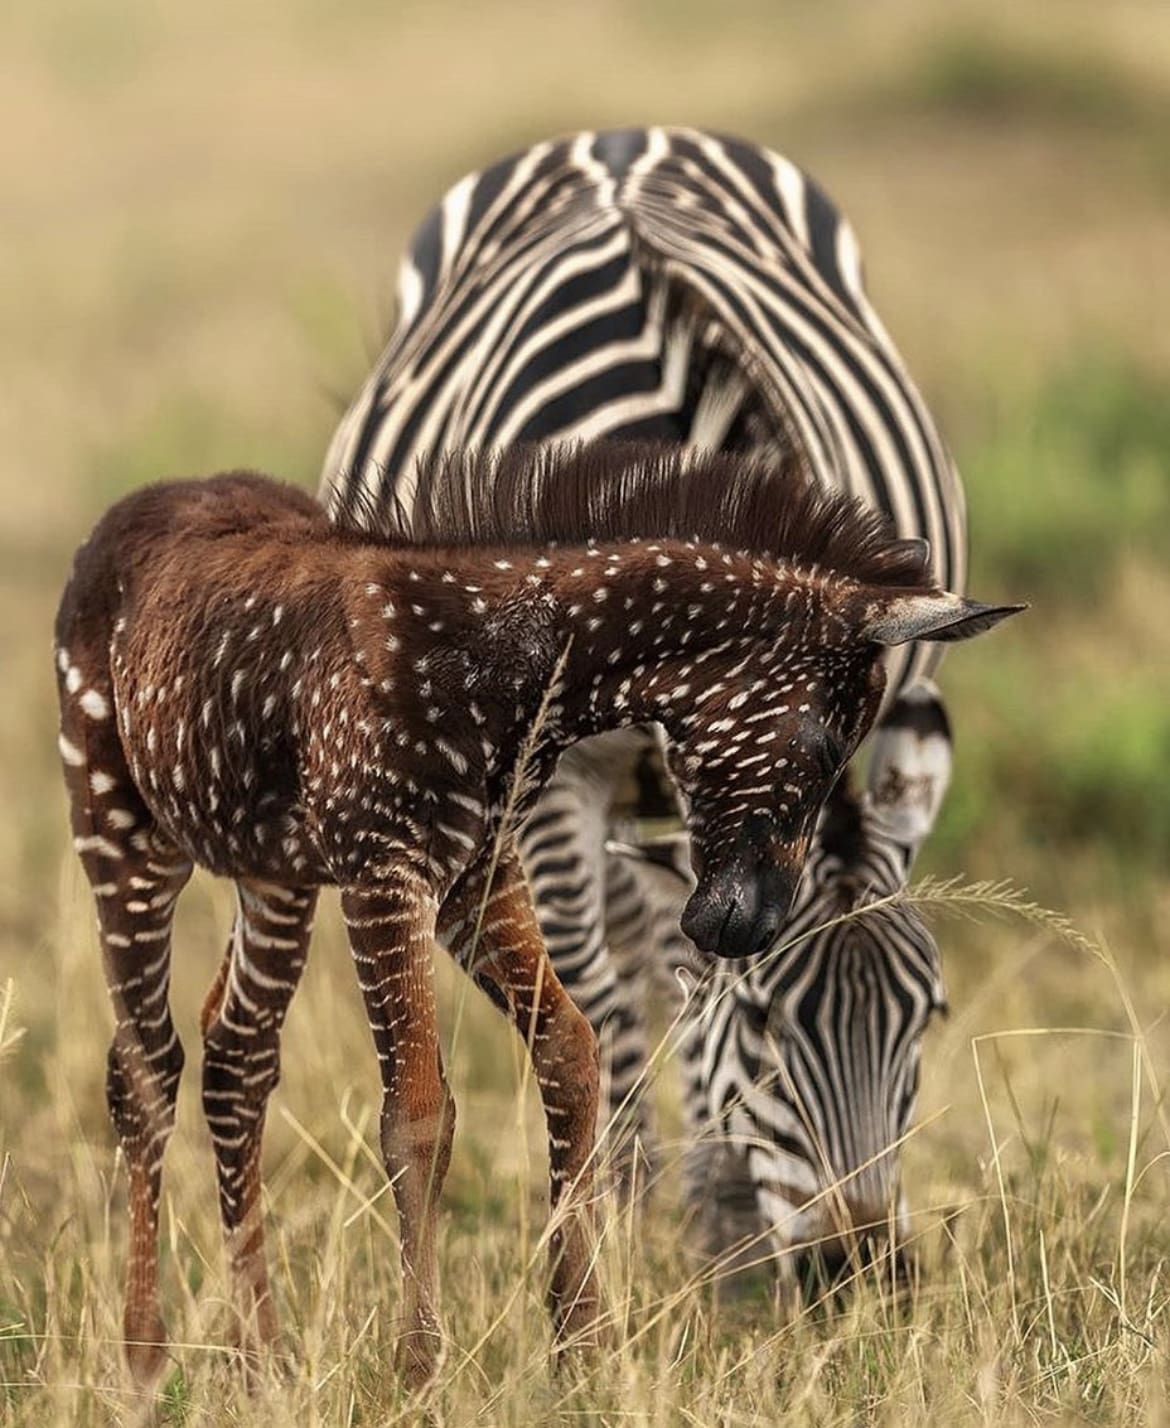 polka-dotted zebra baby